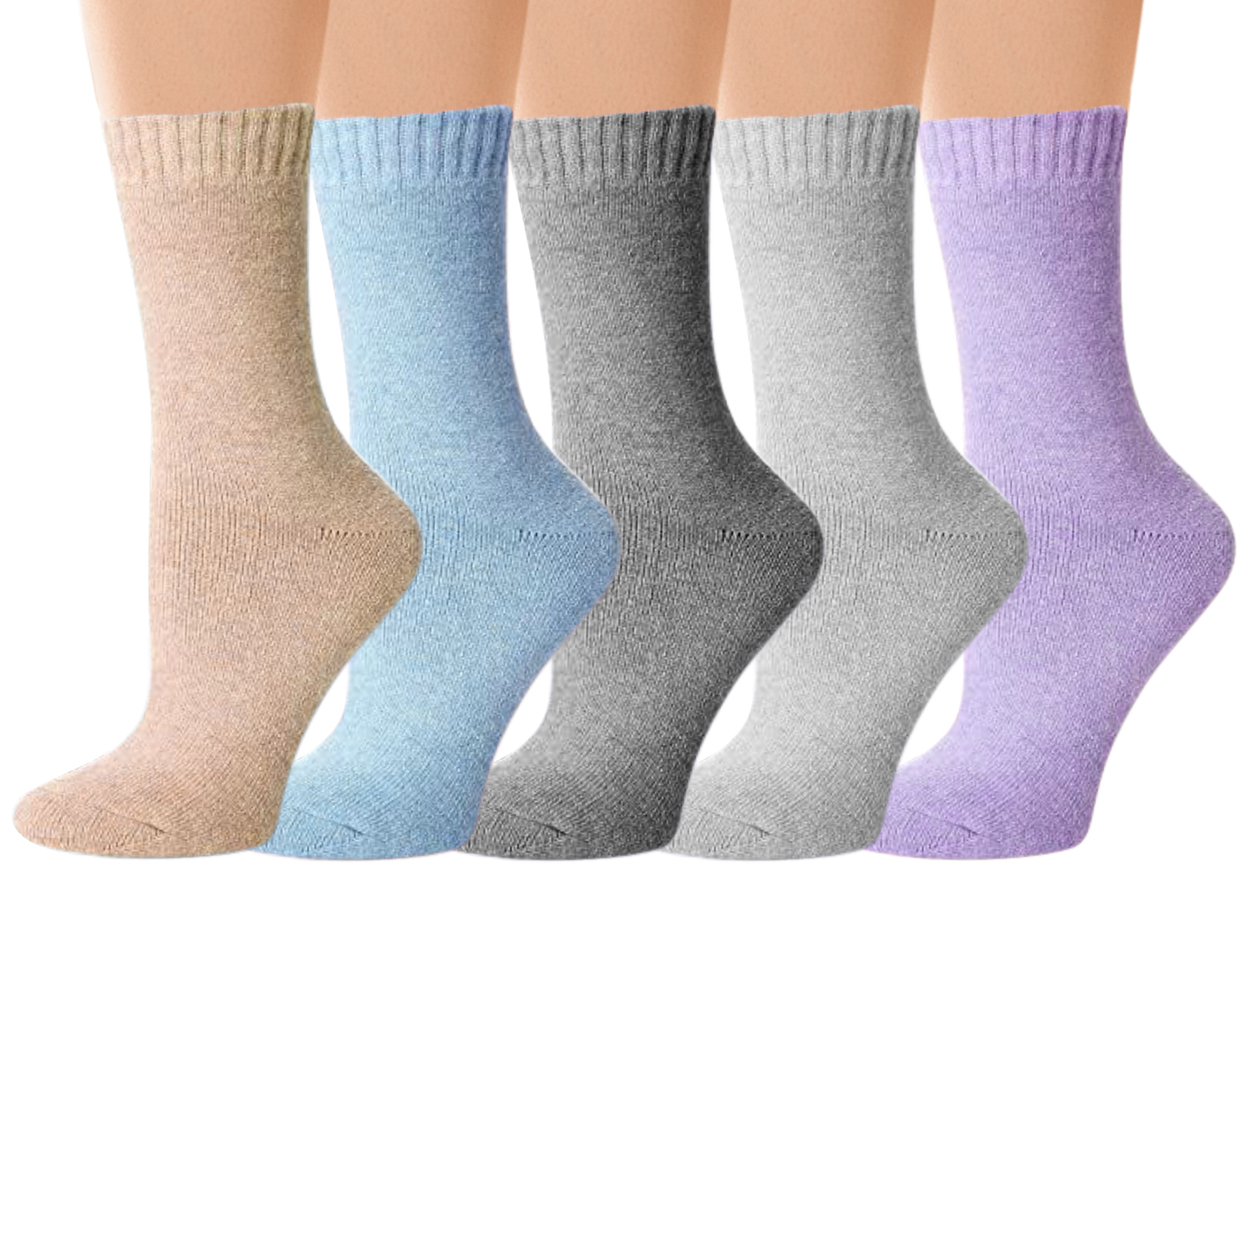 3-Pairs: Women's Warm Thick Soft Merino Lamb Wool Winter Thermal Socks